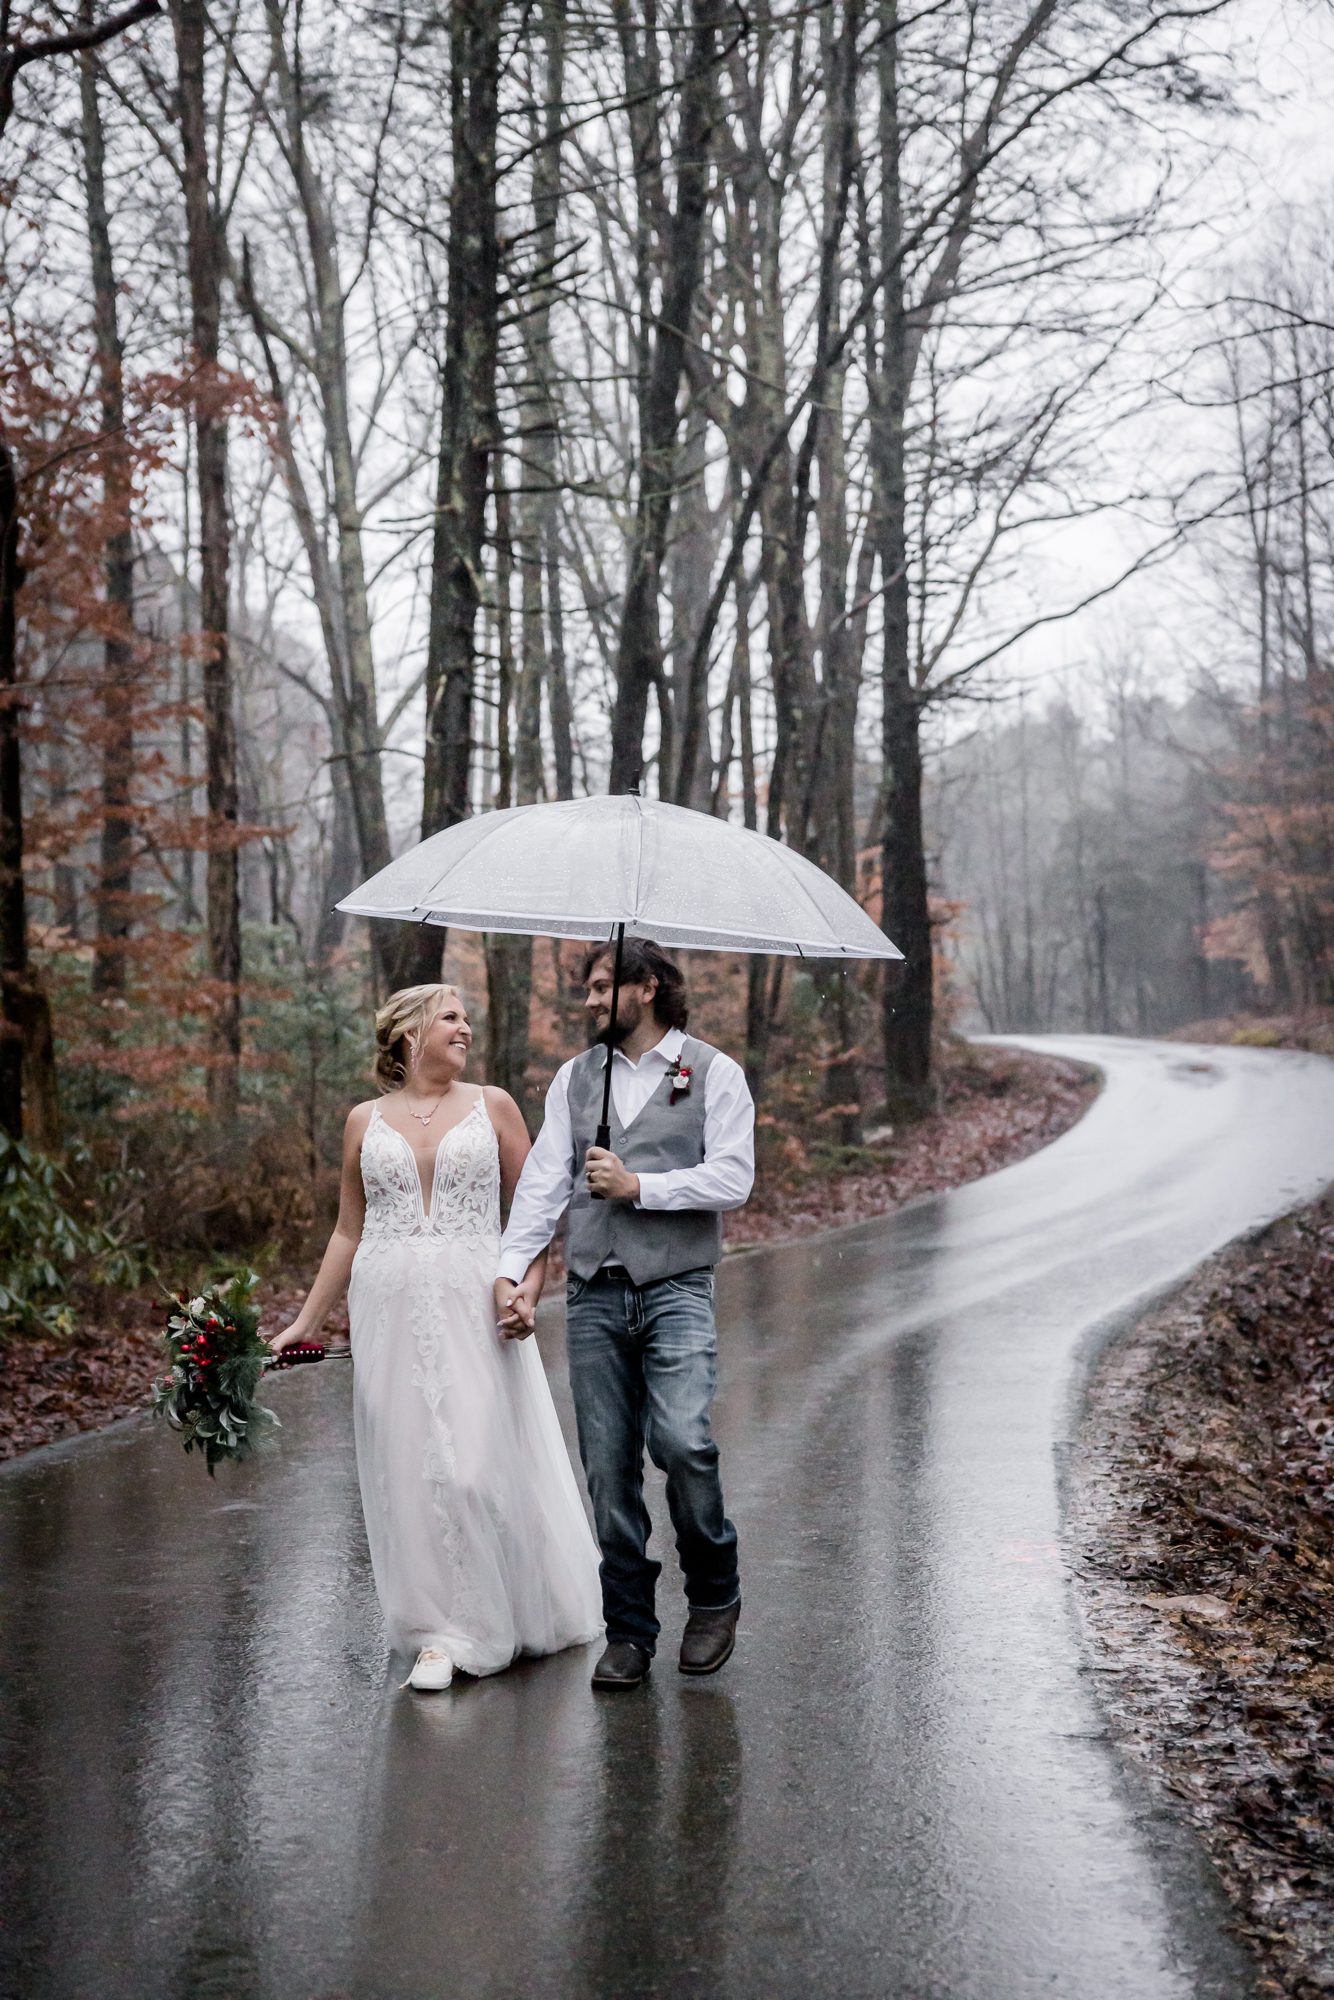 Raining Wedding Day